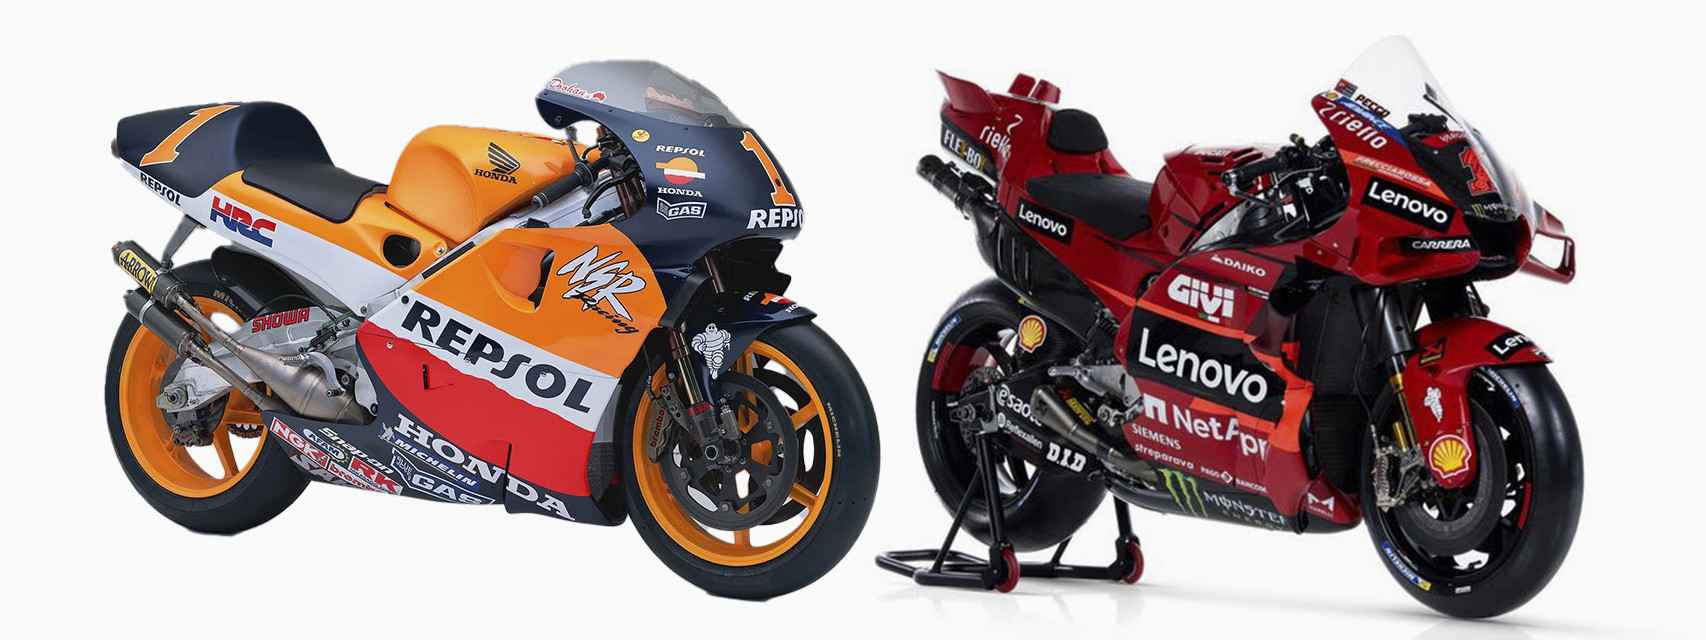 Comparativa entre la Honda NSR500 de Mick Doohan en 1999 y la Ducati Desmosedici GP23 de Pecco Bagnaia en 2023